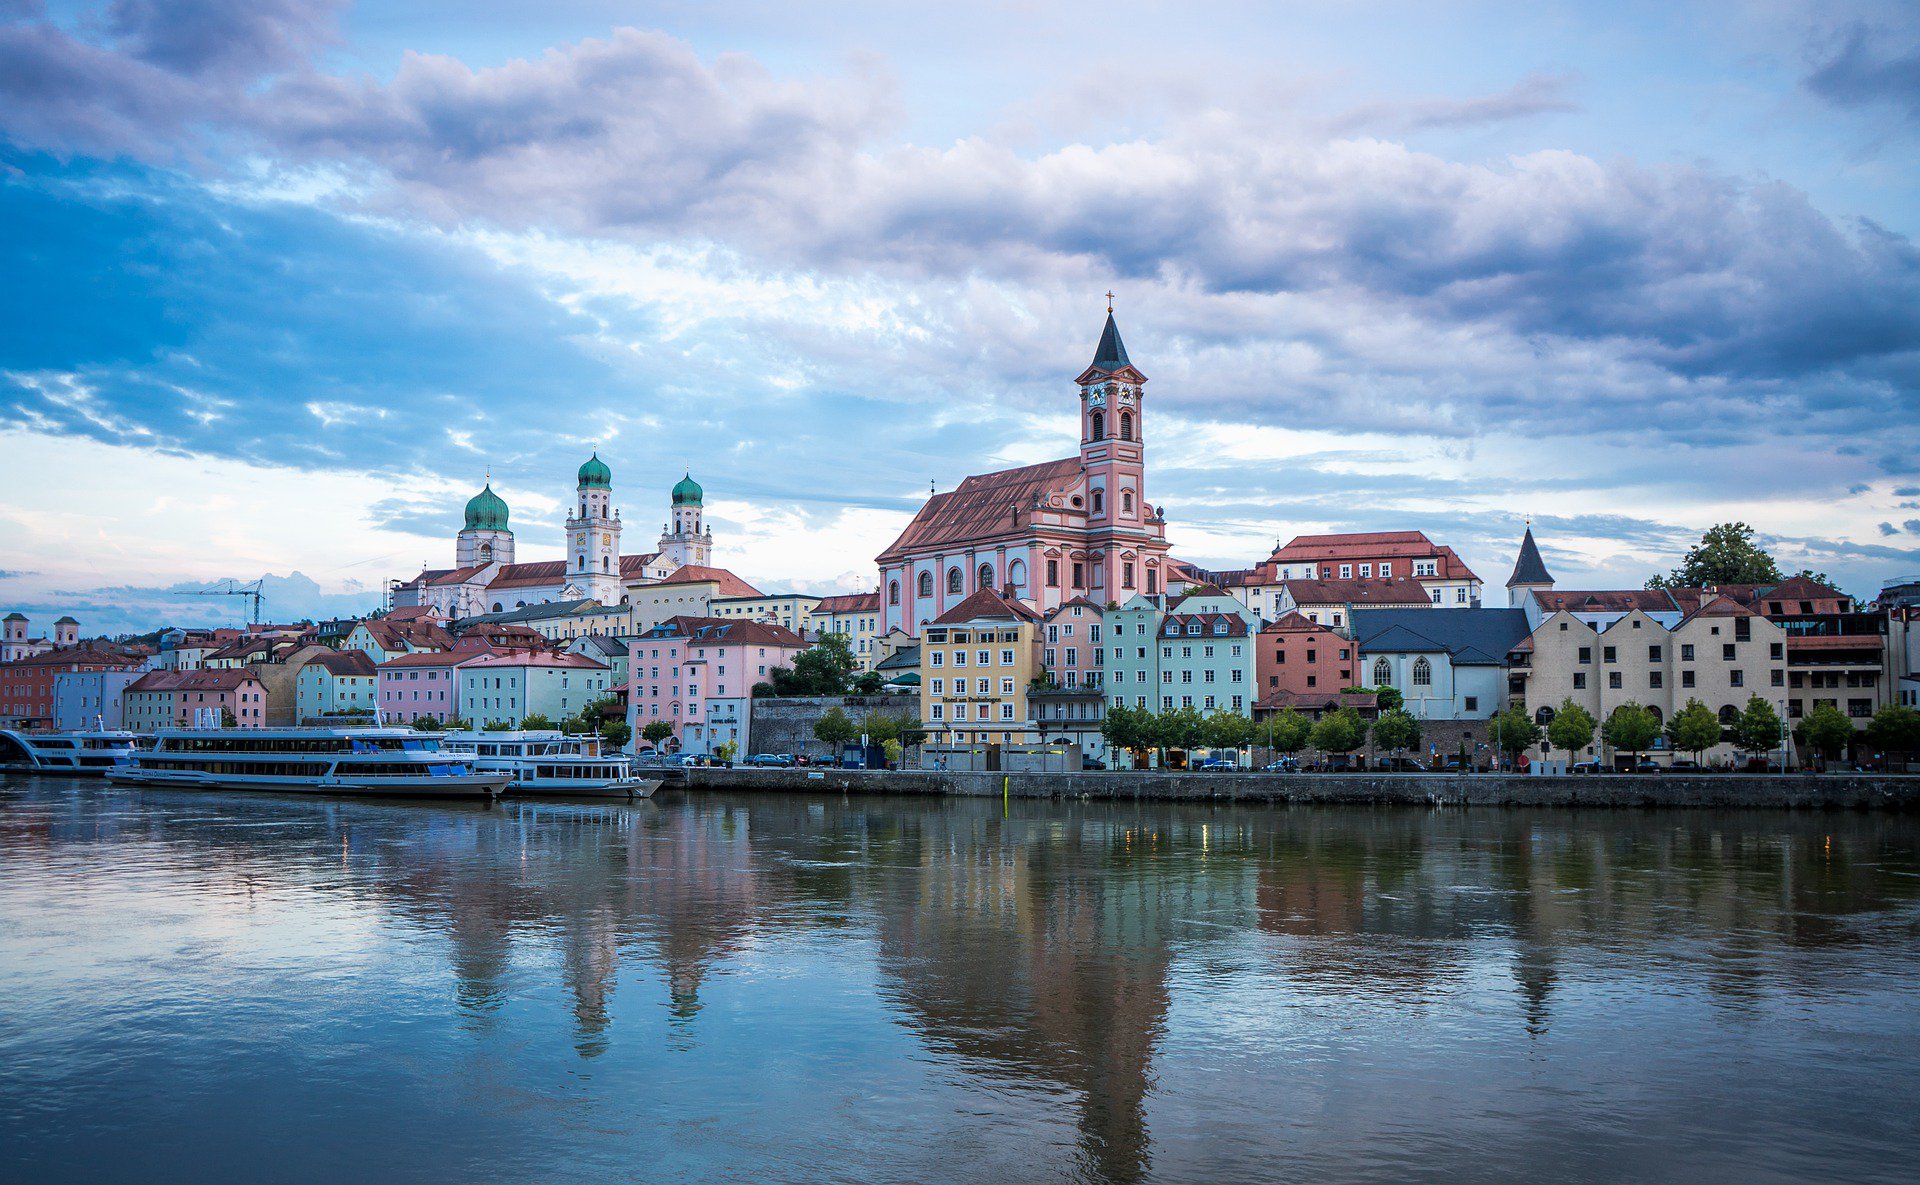 Stare miasto w Pasawie (Bawaria, Niemcy), fot. Leonhard Niederwimmer/Pixabay